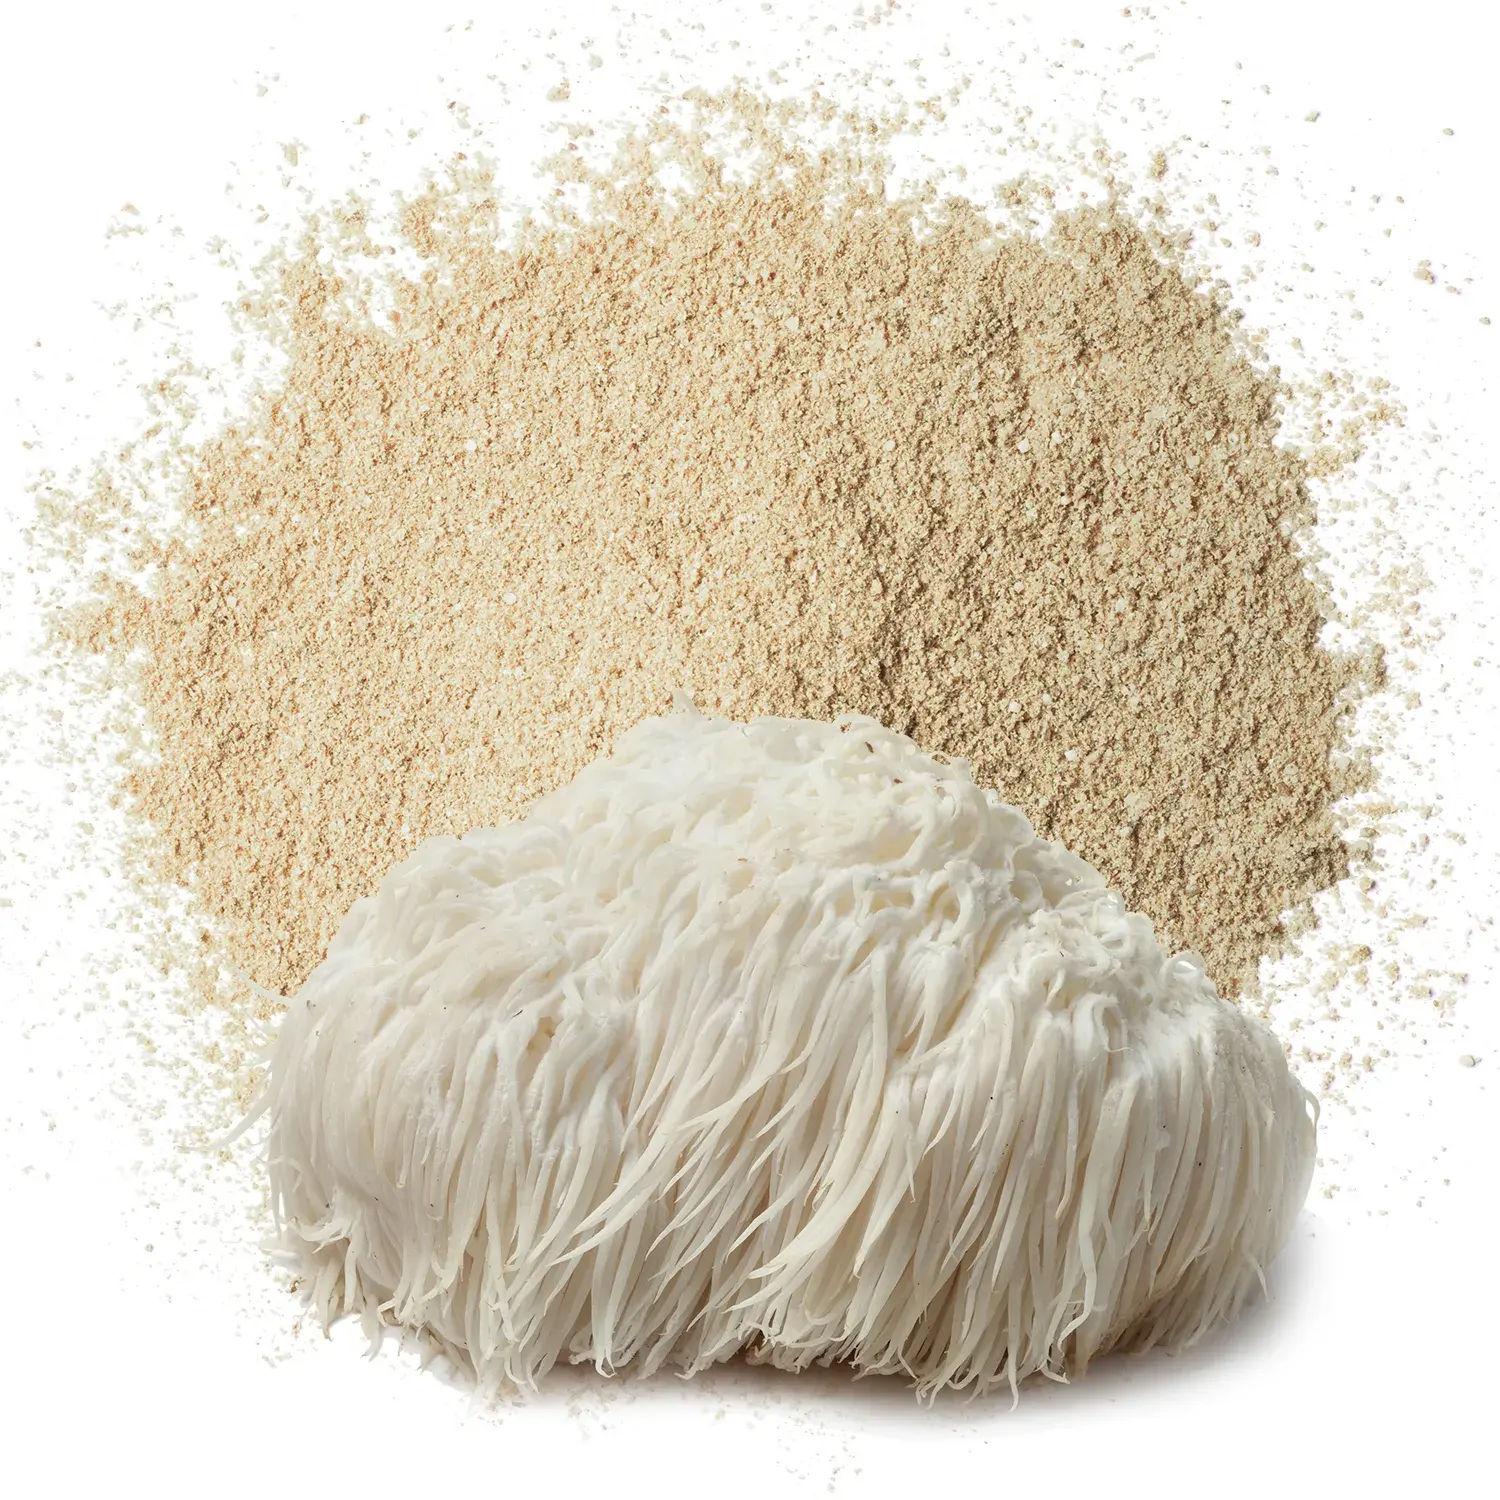 Bubuk ekstrak Hericium Erinaceus jumlah besar ORGANIK MURNI bahan baku berkualitas 50:1 bubuk ekstrak ganda jamur singa